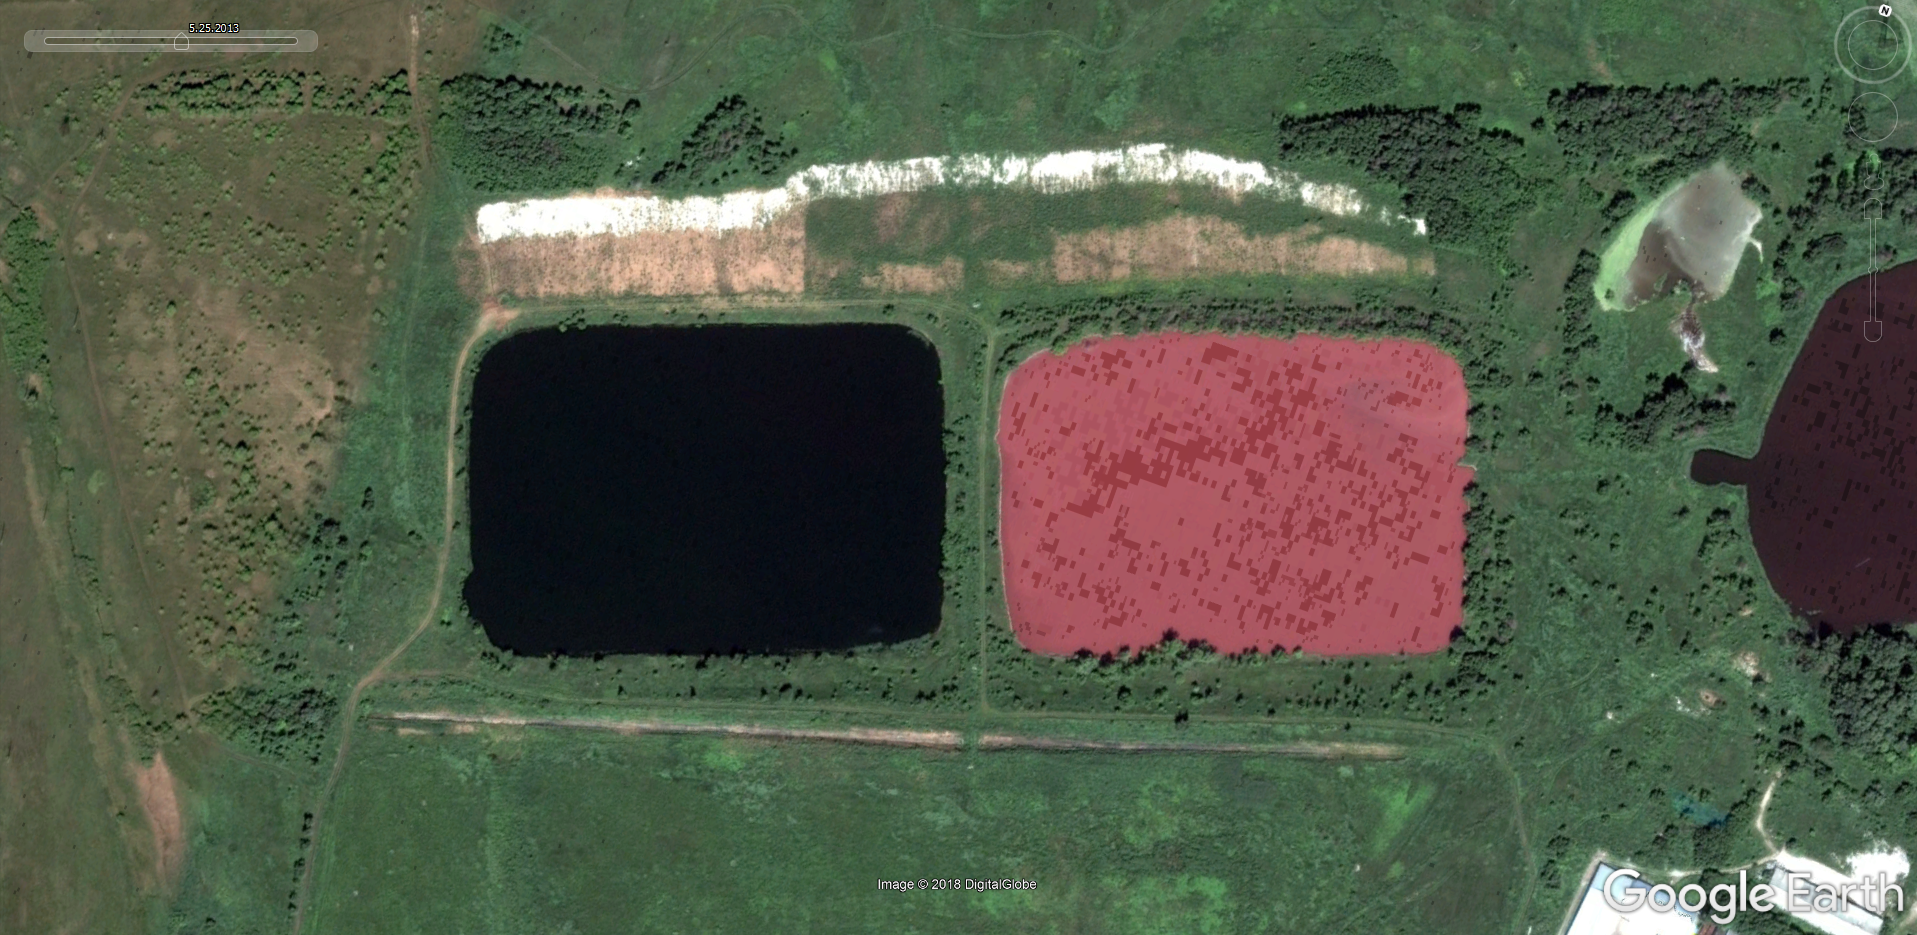 Розовое озеро самарская область где находится фото